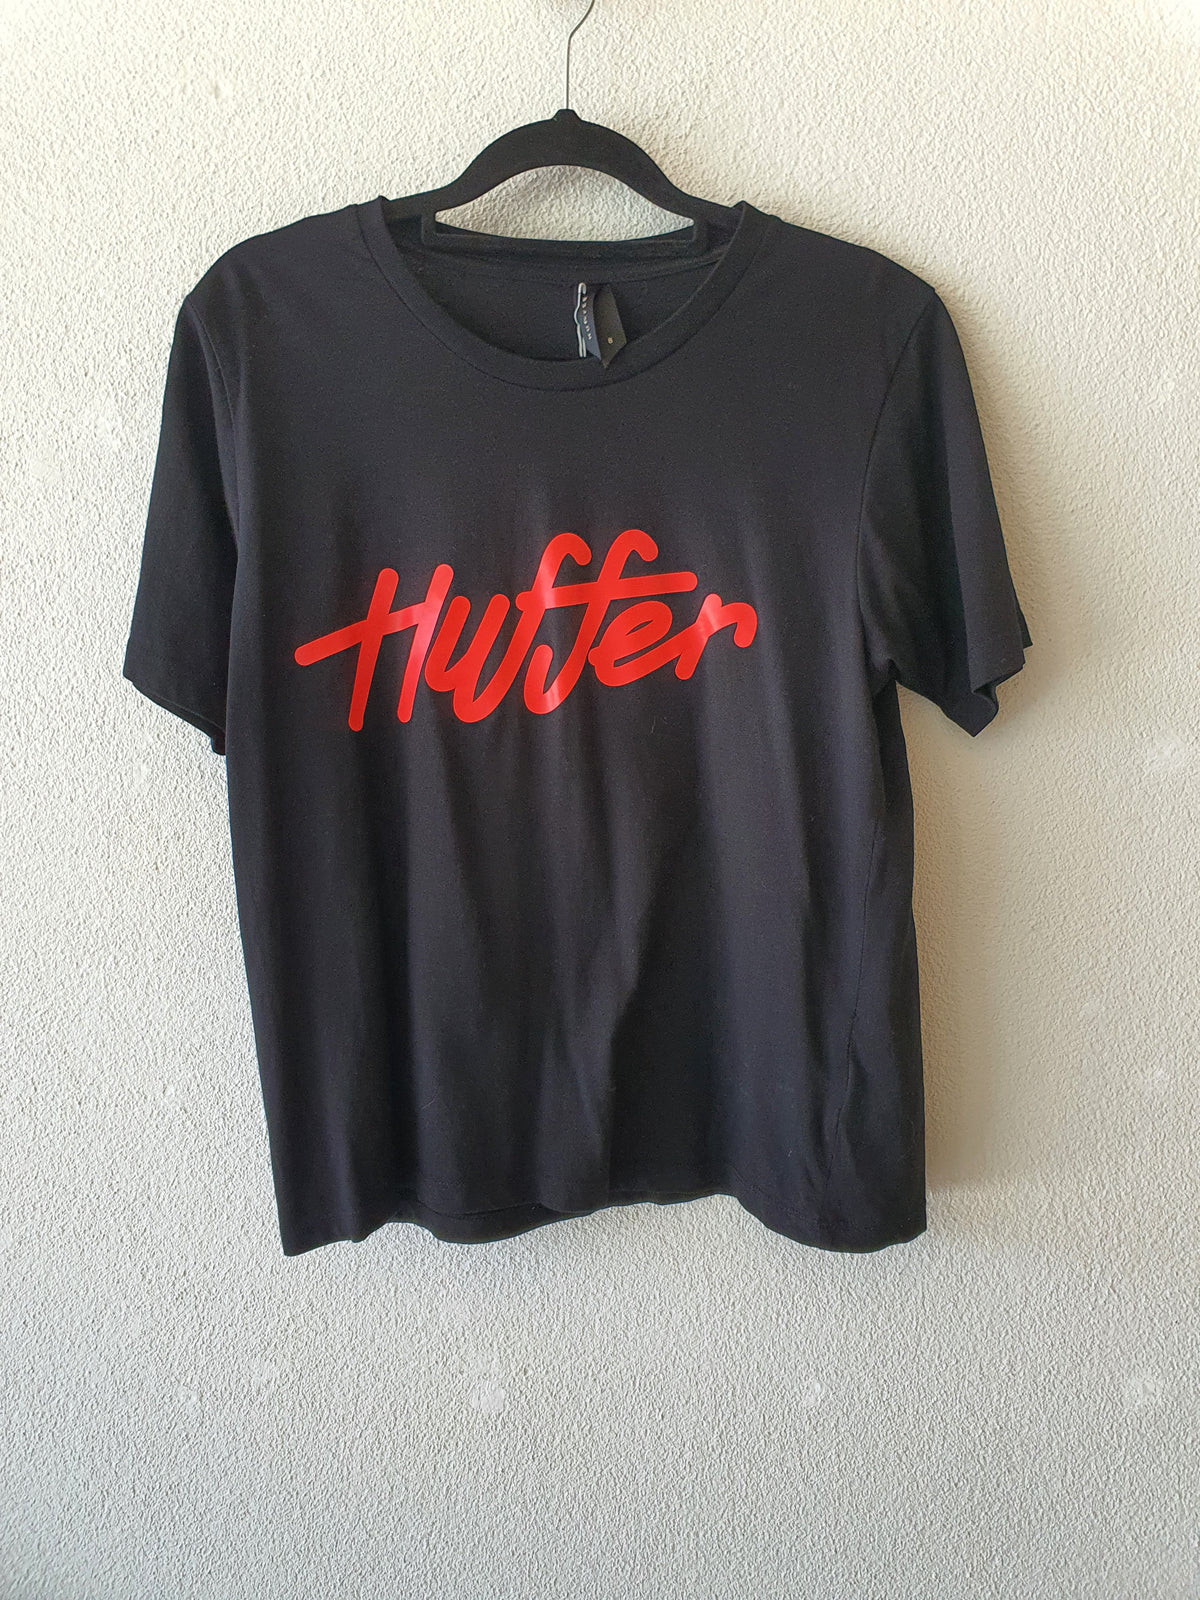 Huffer Top MMMM T-Shirt 8